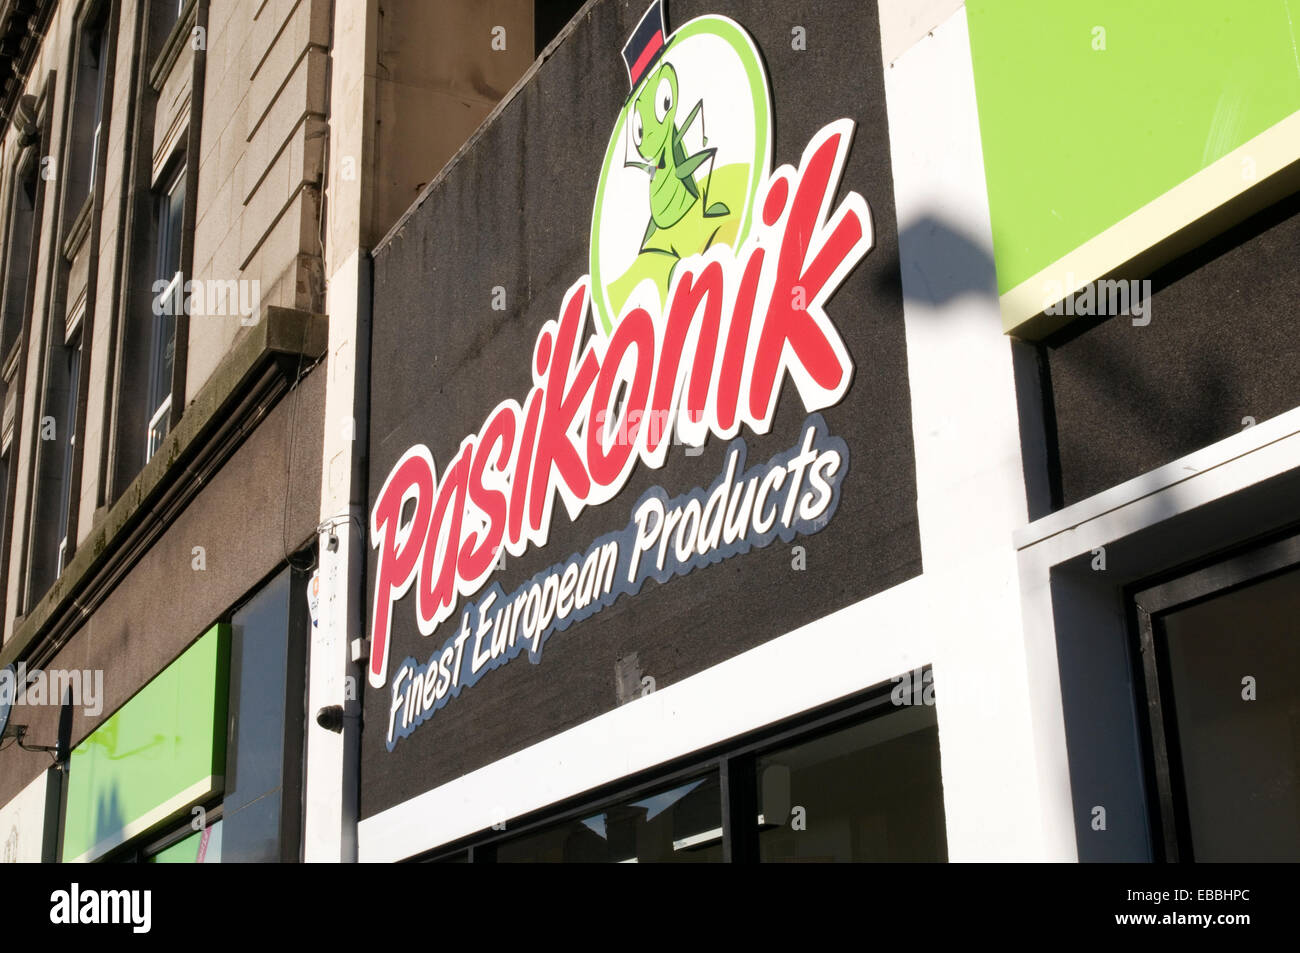 Pasiknik est europa orientale alimenti alimentari supermercato supermercati negozi negozio polacco lituano estone nel Regno Unito le catene della catena Foto Stock